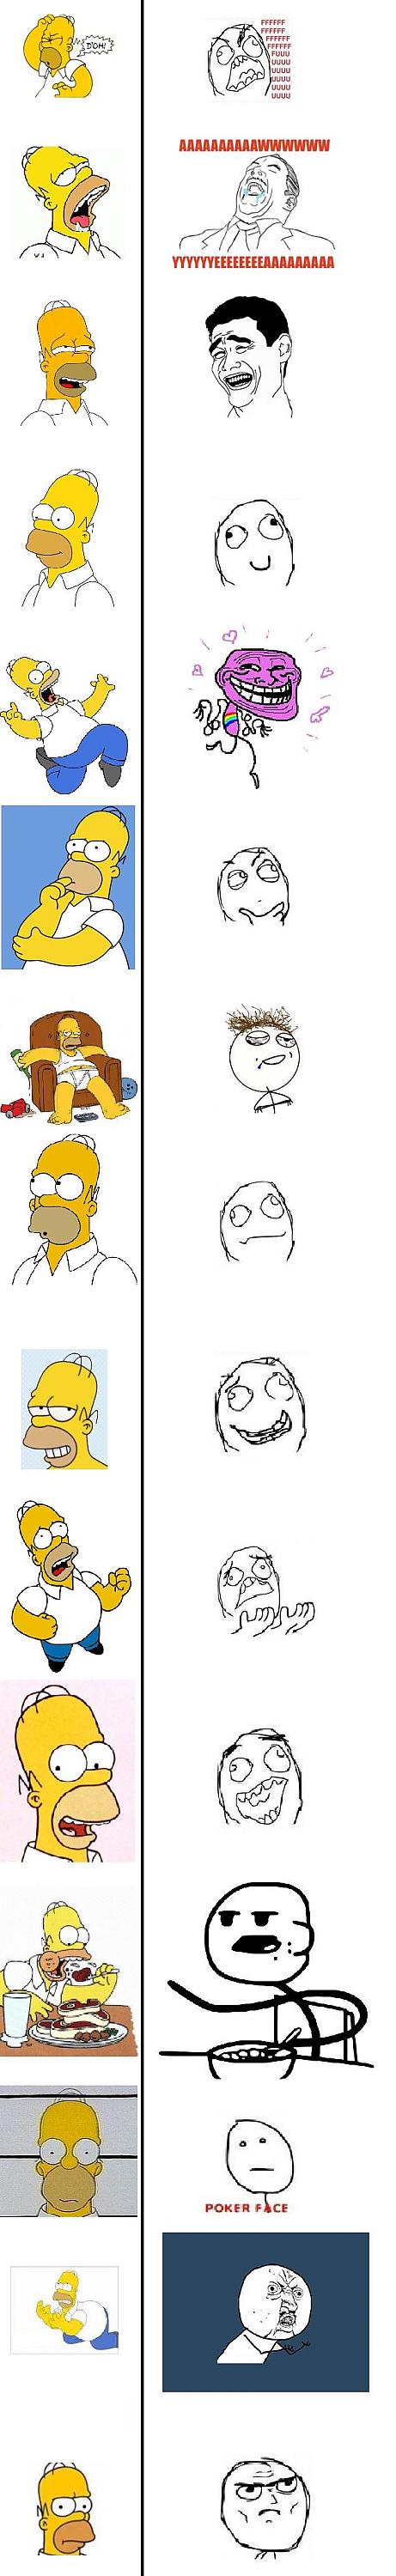 Homers Simpsons!